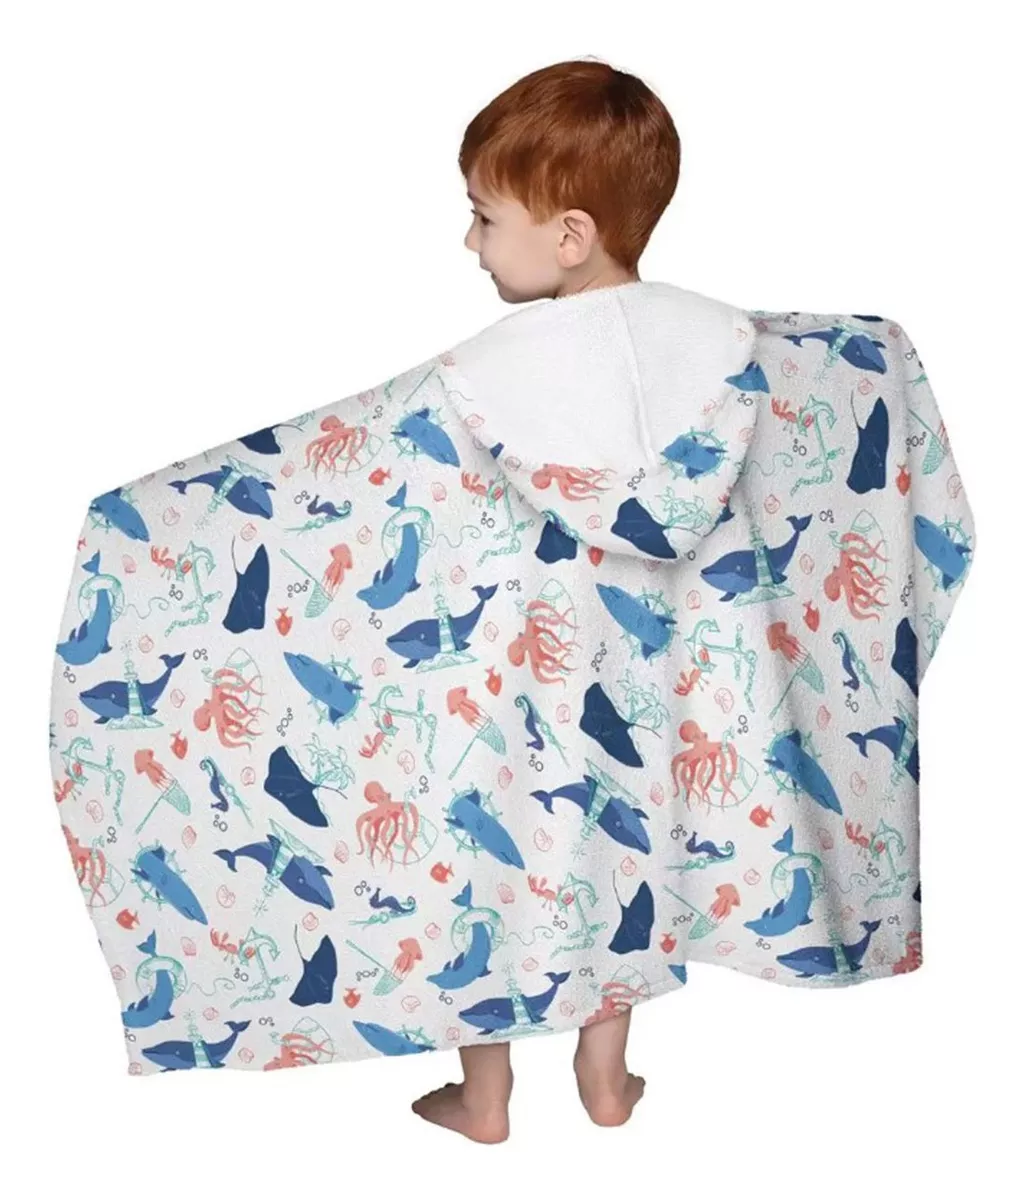 Primeira imagem para pesquisa de toalha infantil